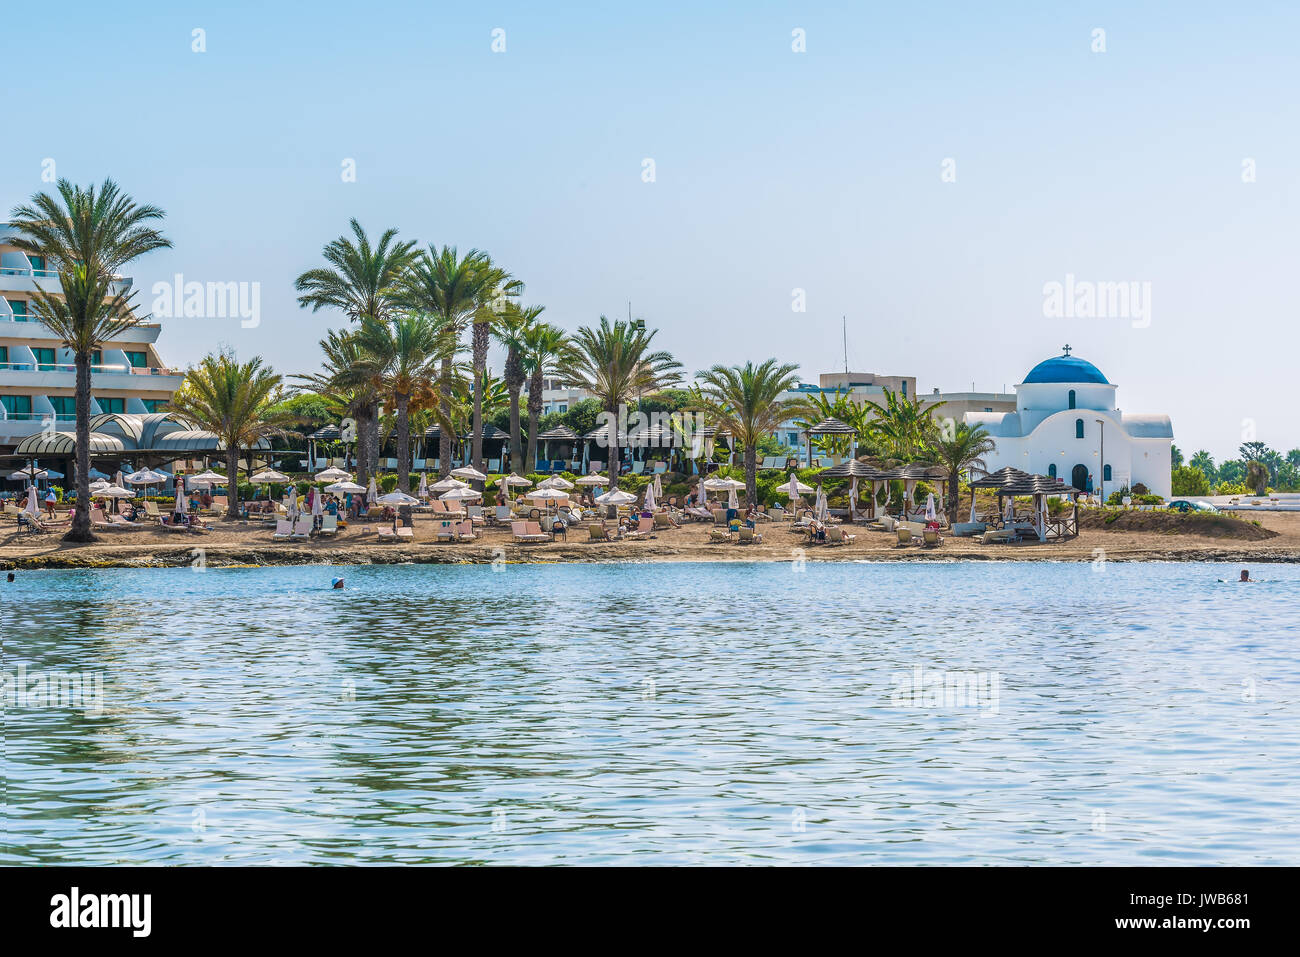 Paphos, Zypern - 20. September 2016: Blick auf den schönen Strand in Paphos, Zypern. Ein Fragment des Mittelmeers und einem kleinen weißen Orthodoxen Chu Stockfoto